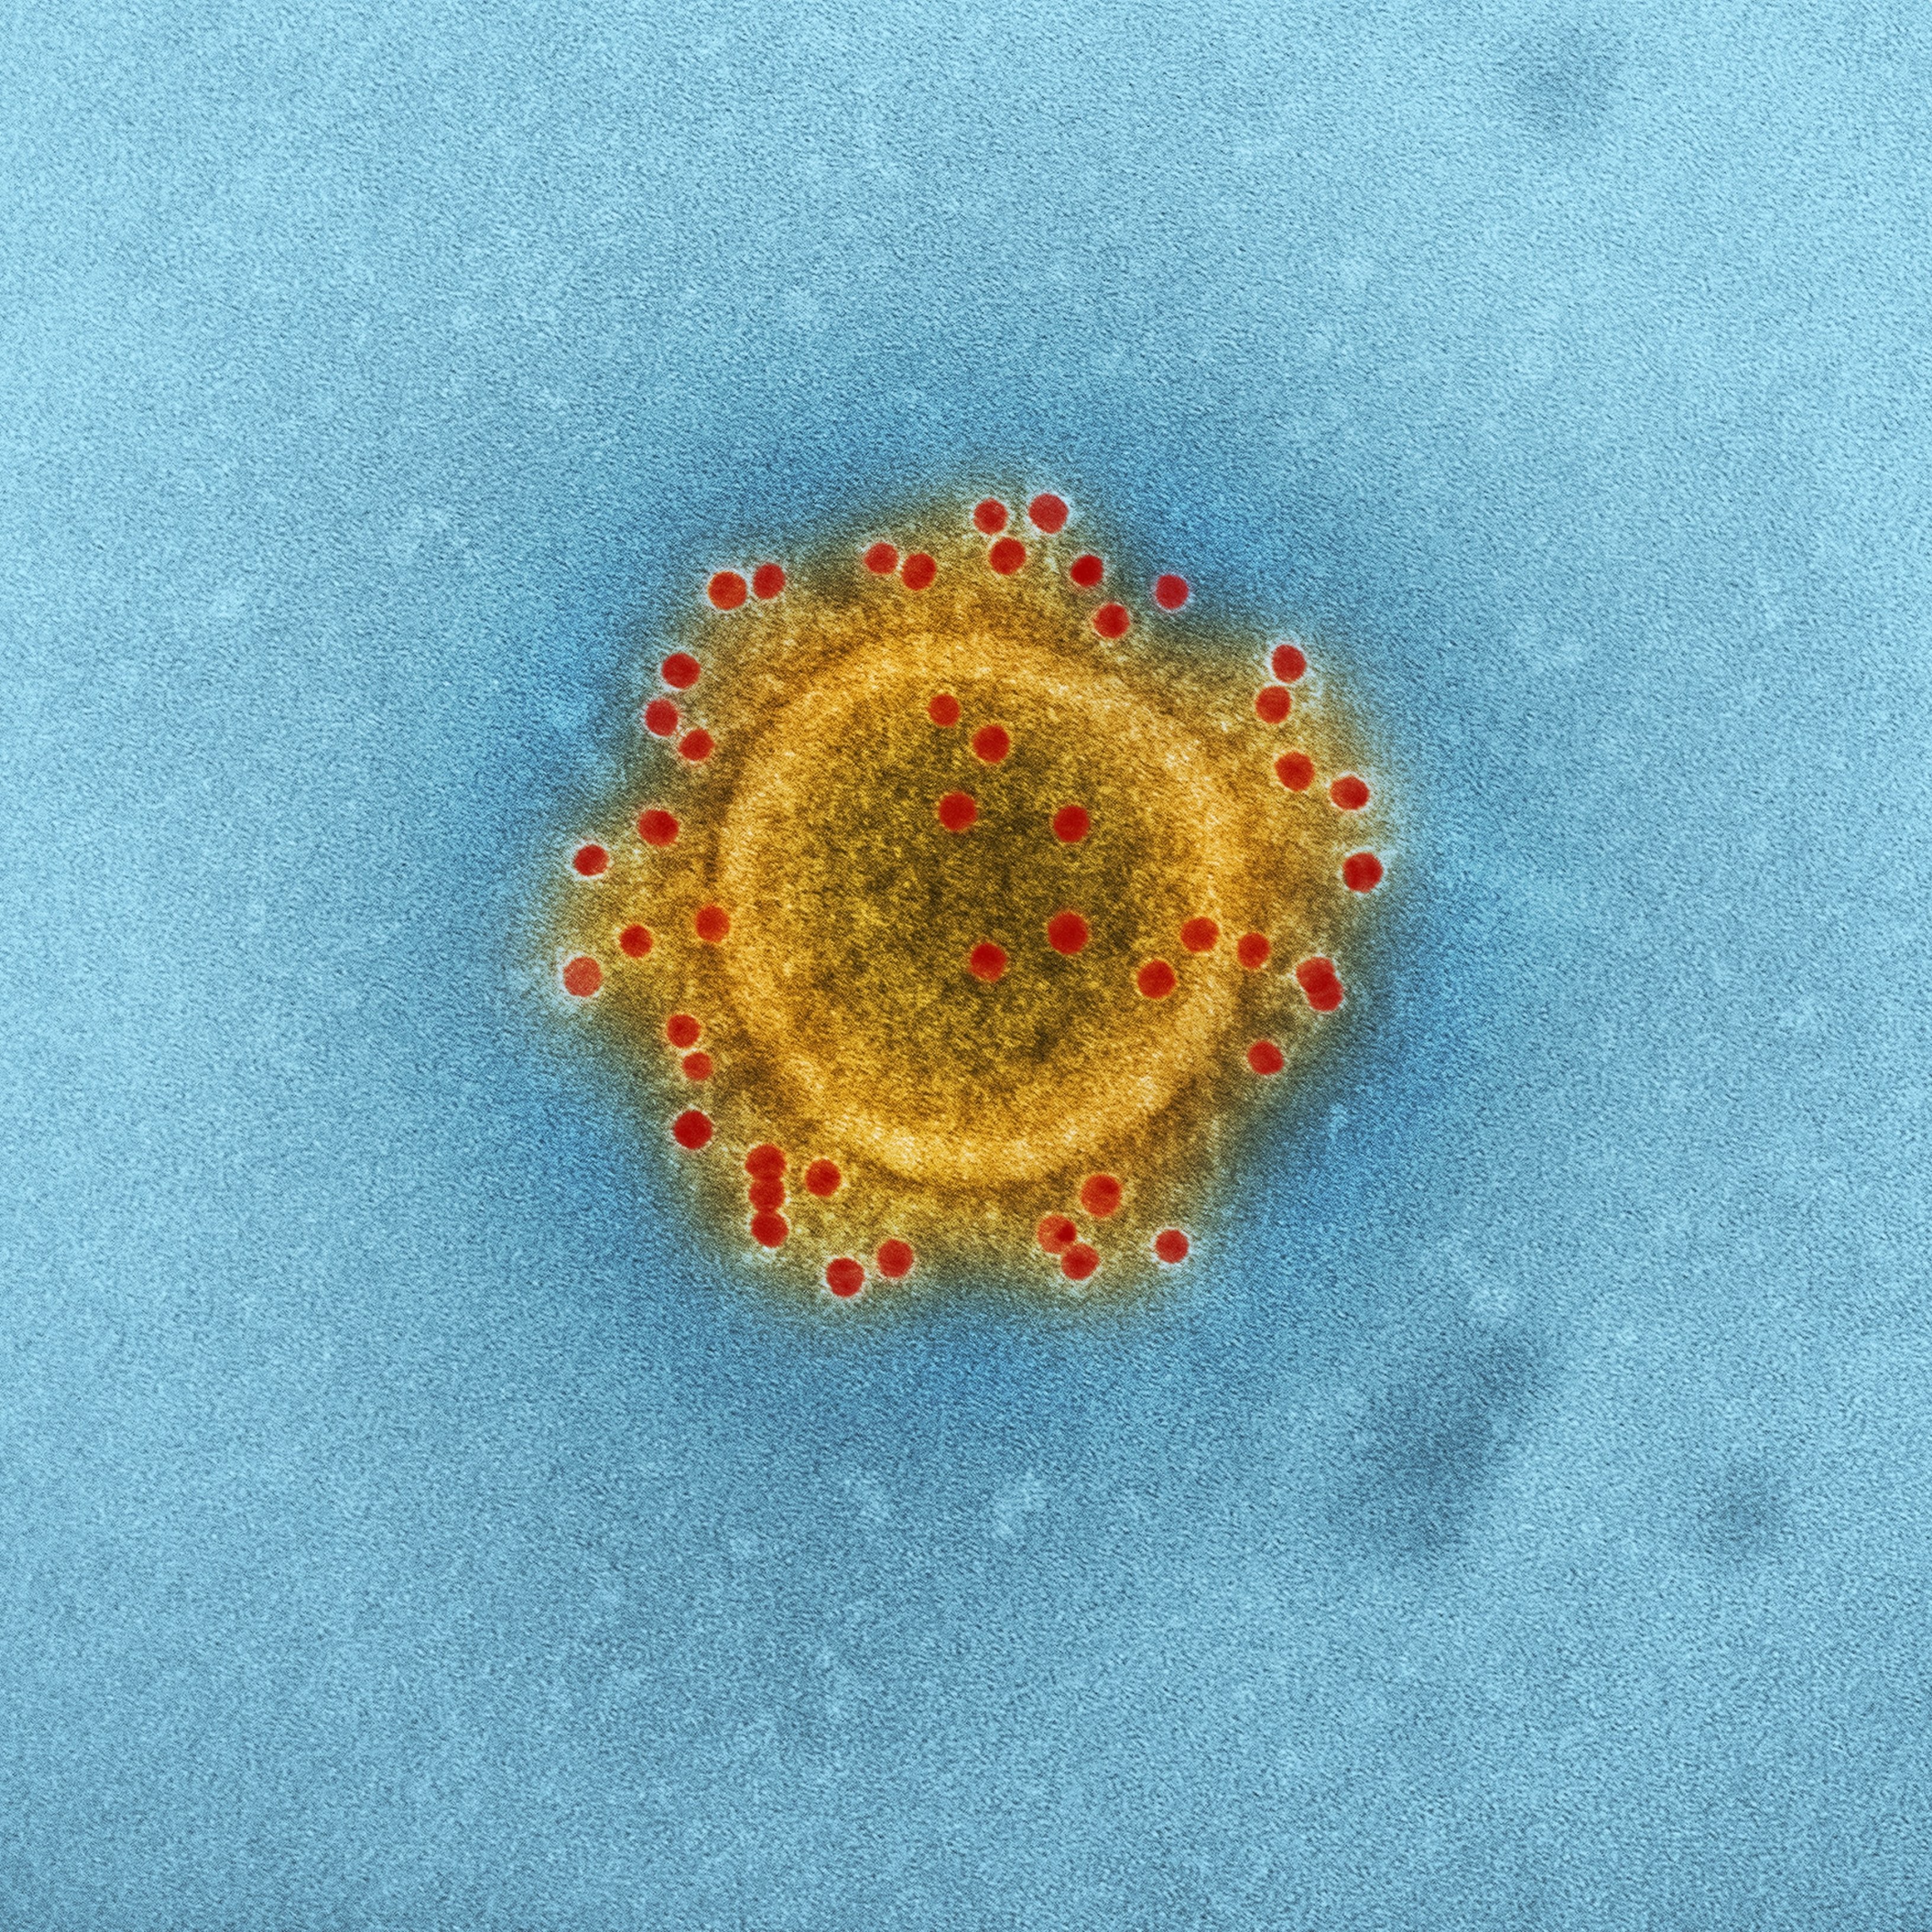 Dues noves variants del coronavirus que preocupen la comunitat científica